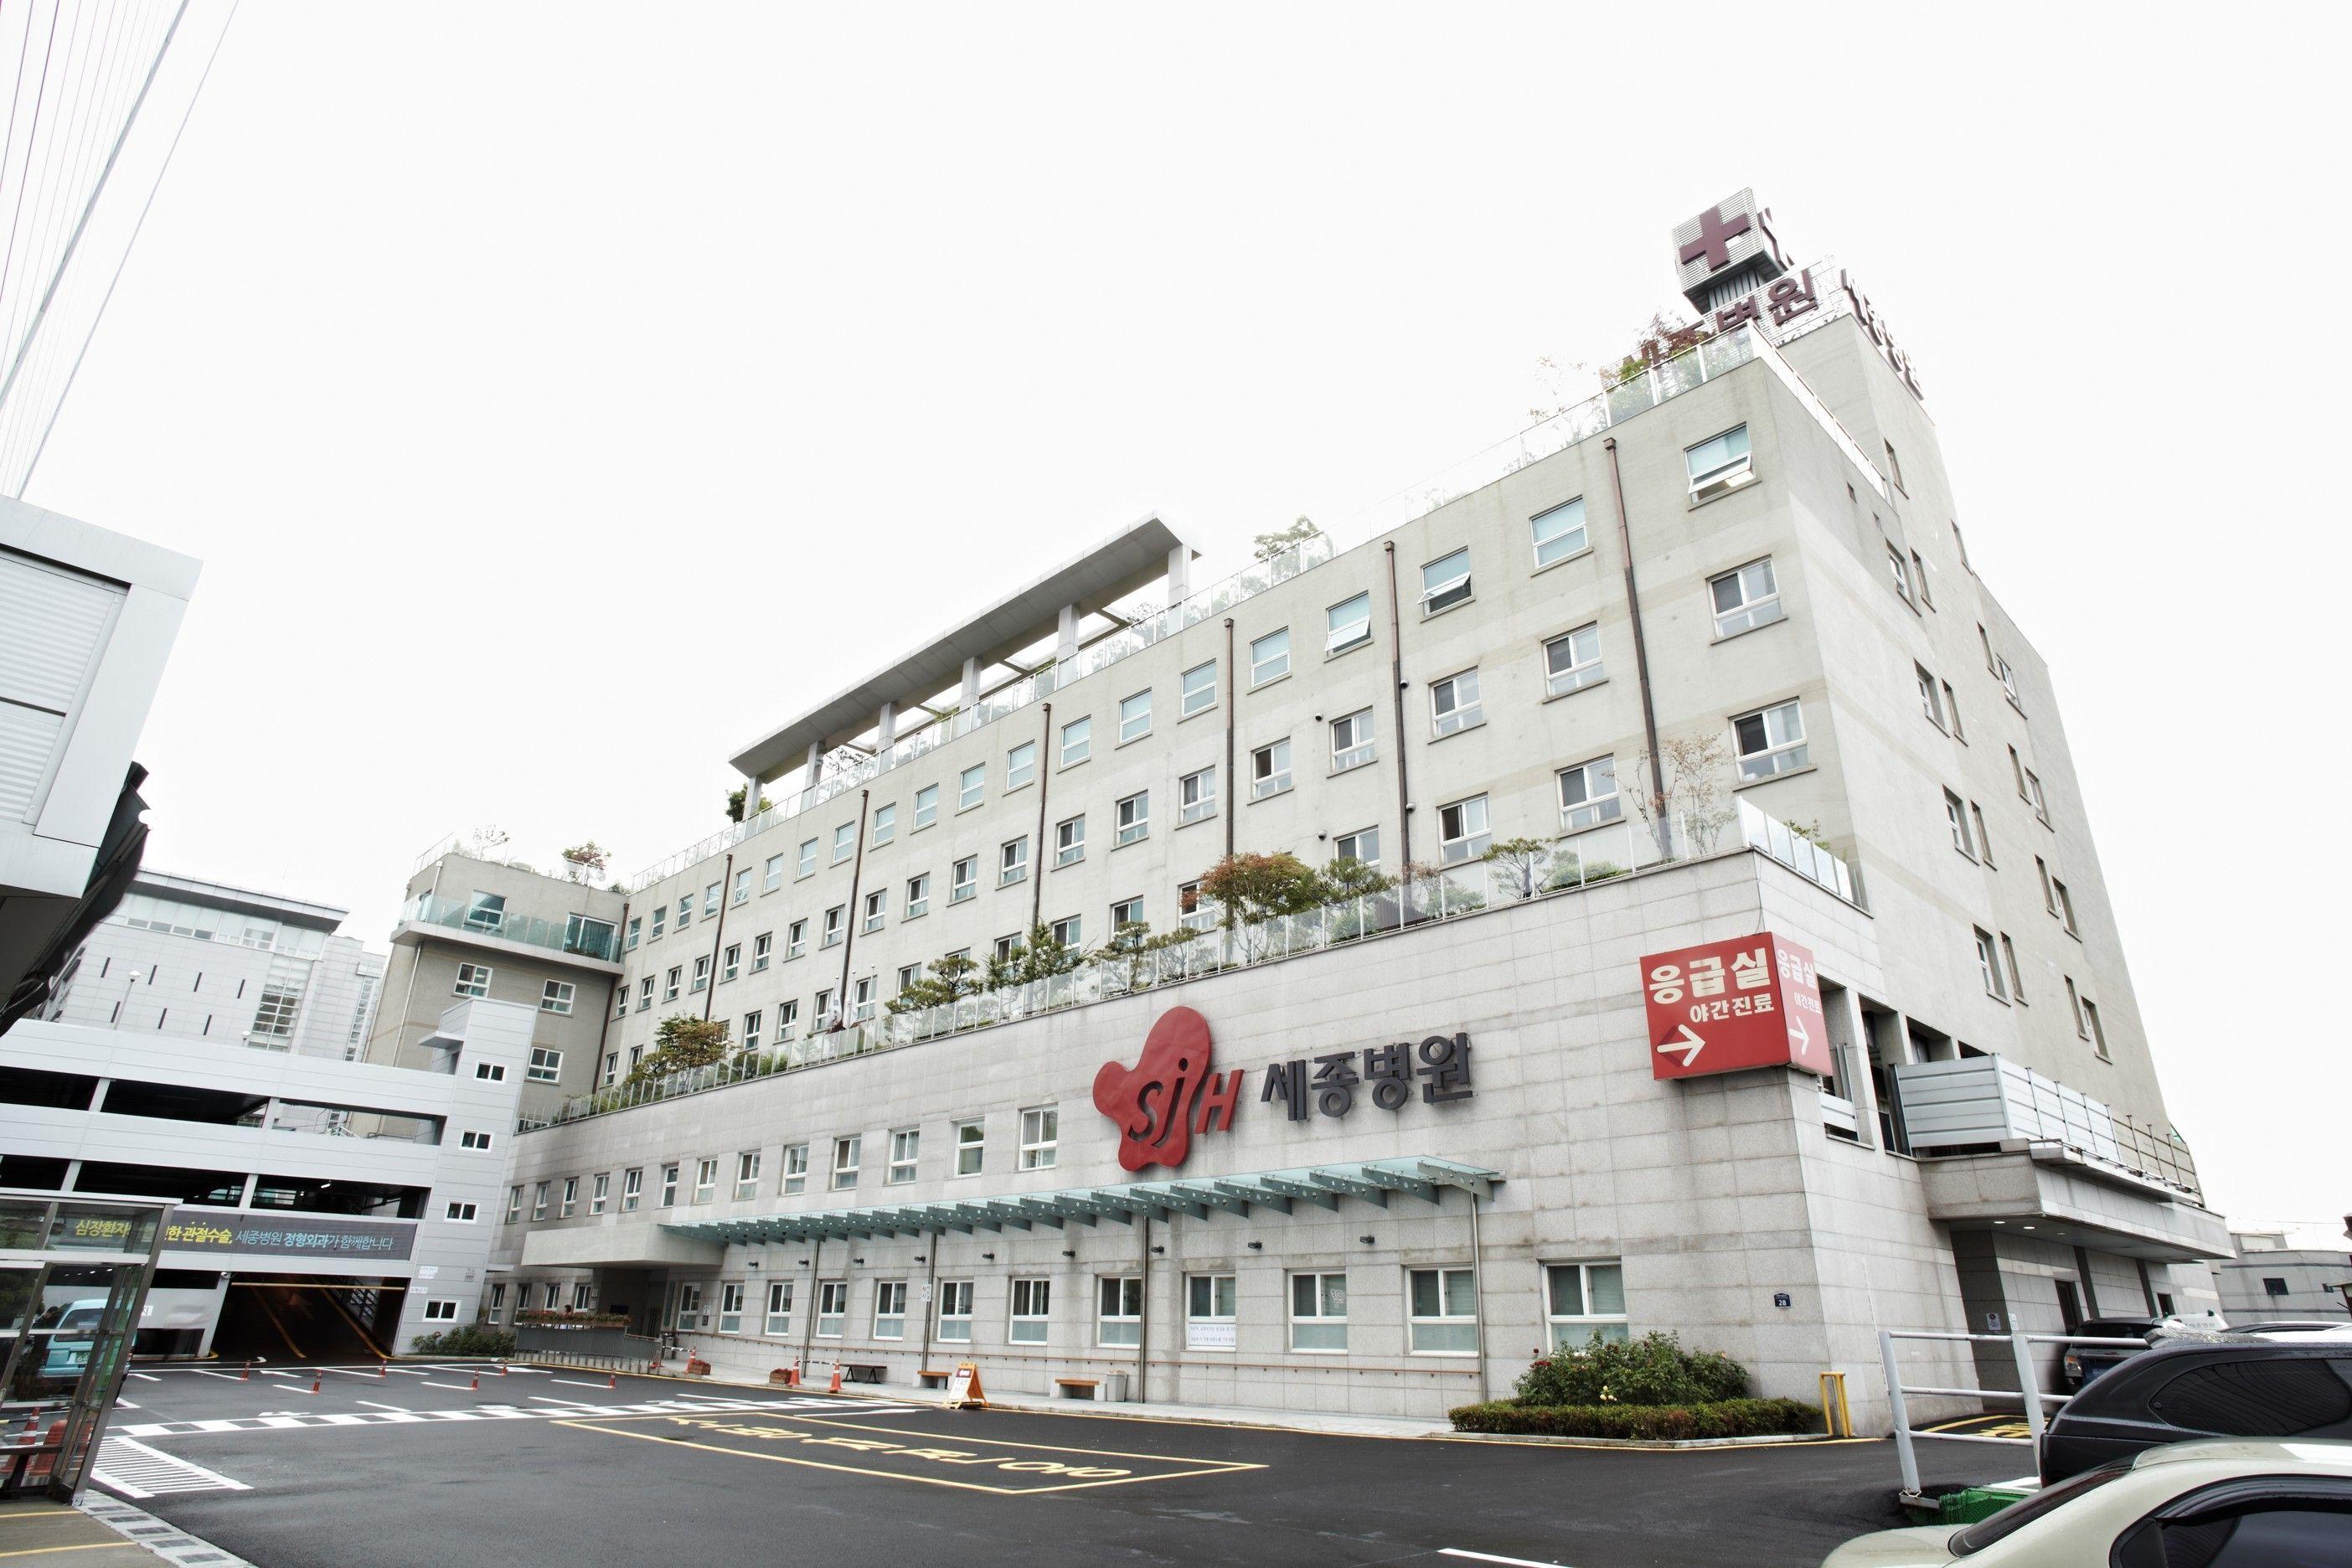 больницы в корее